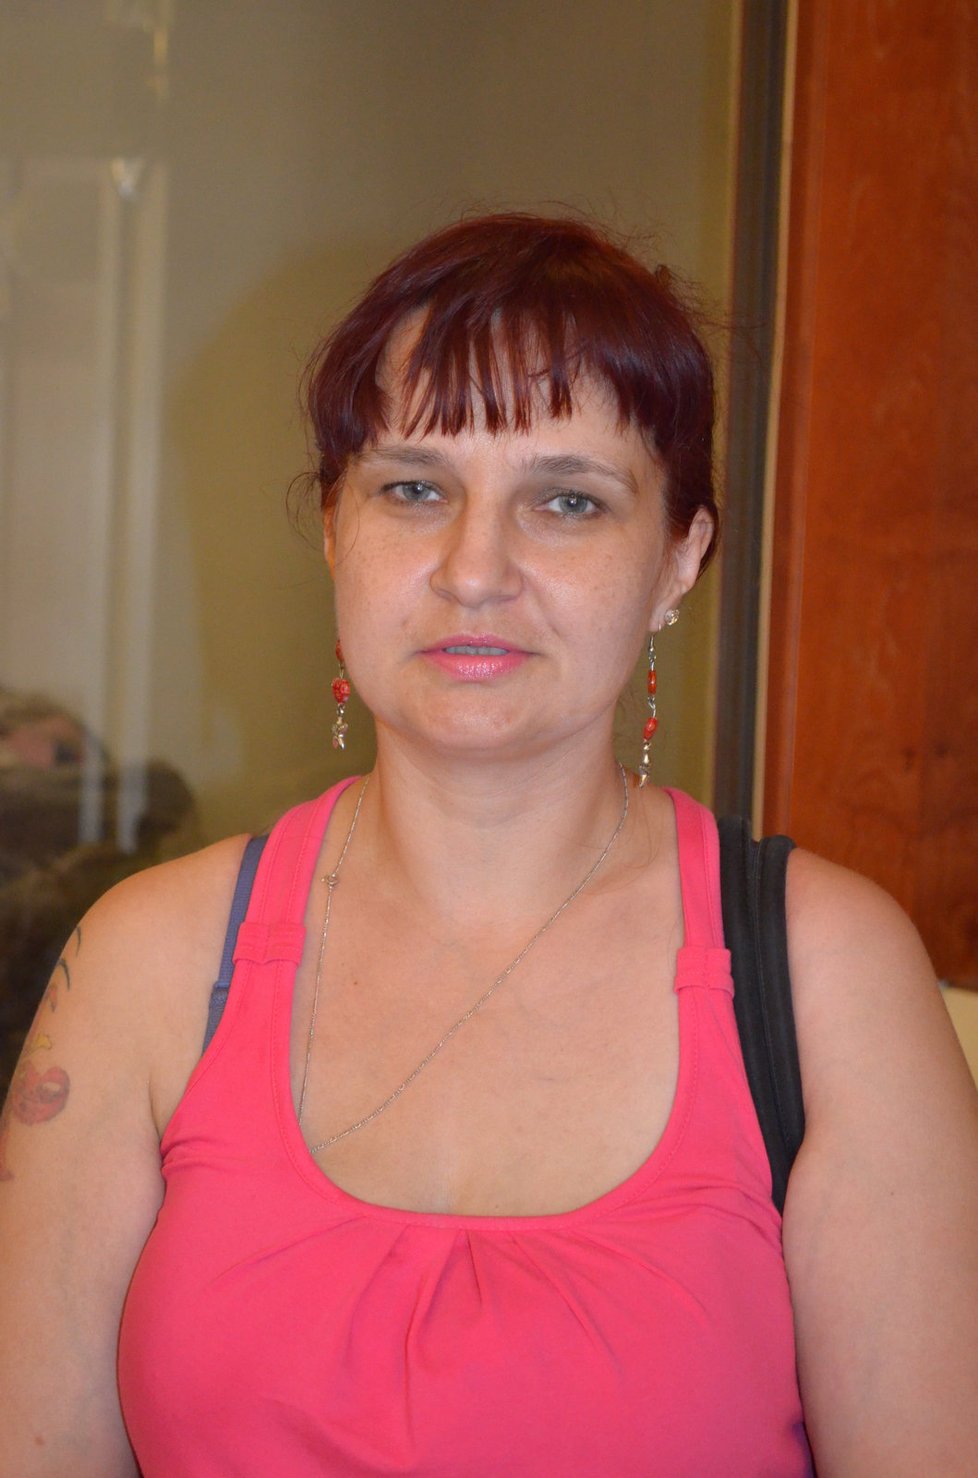 Jana Bartoňová (43), dělnice, Vsetín: „Mám dva syny a úplně se toho bojím. Není to dobrý nápad. Znám případ, kdy byl kluk tak šikanován, že si vzal život. A holky, to je nesmysl.“